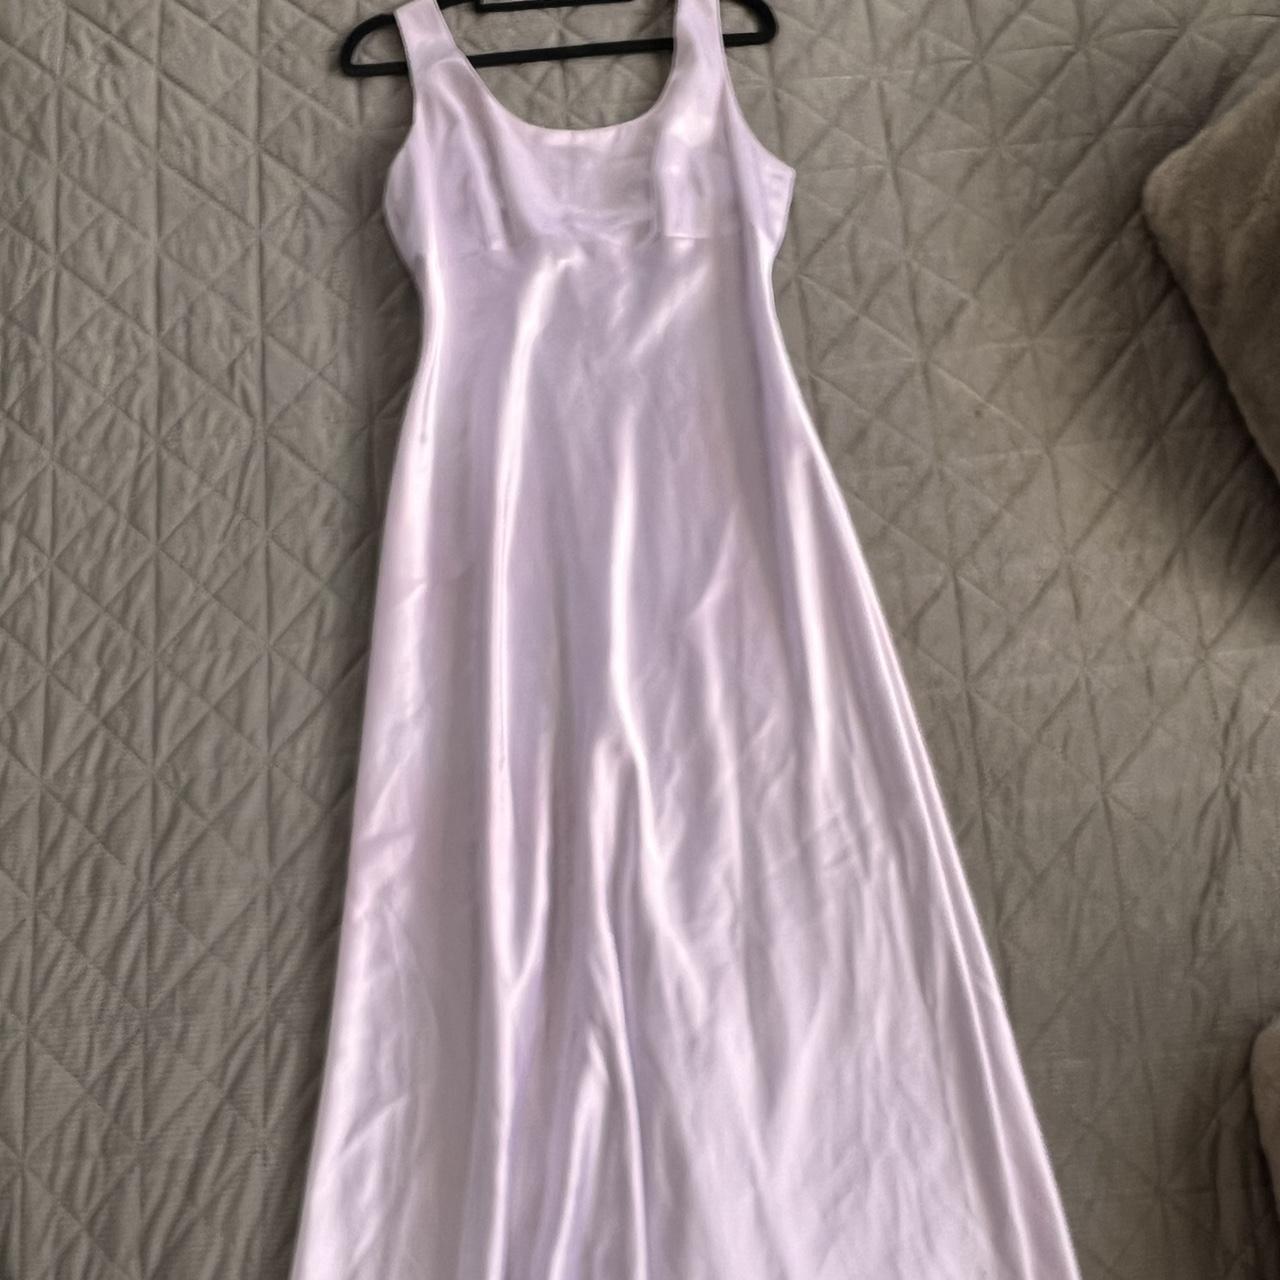 Women's Silver and Purple Dress | Depop